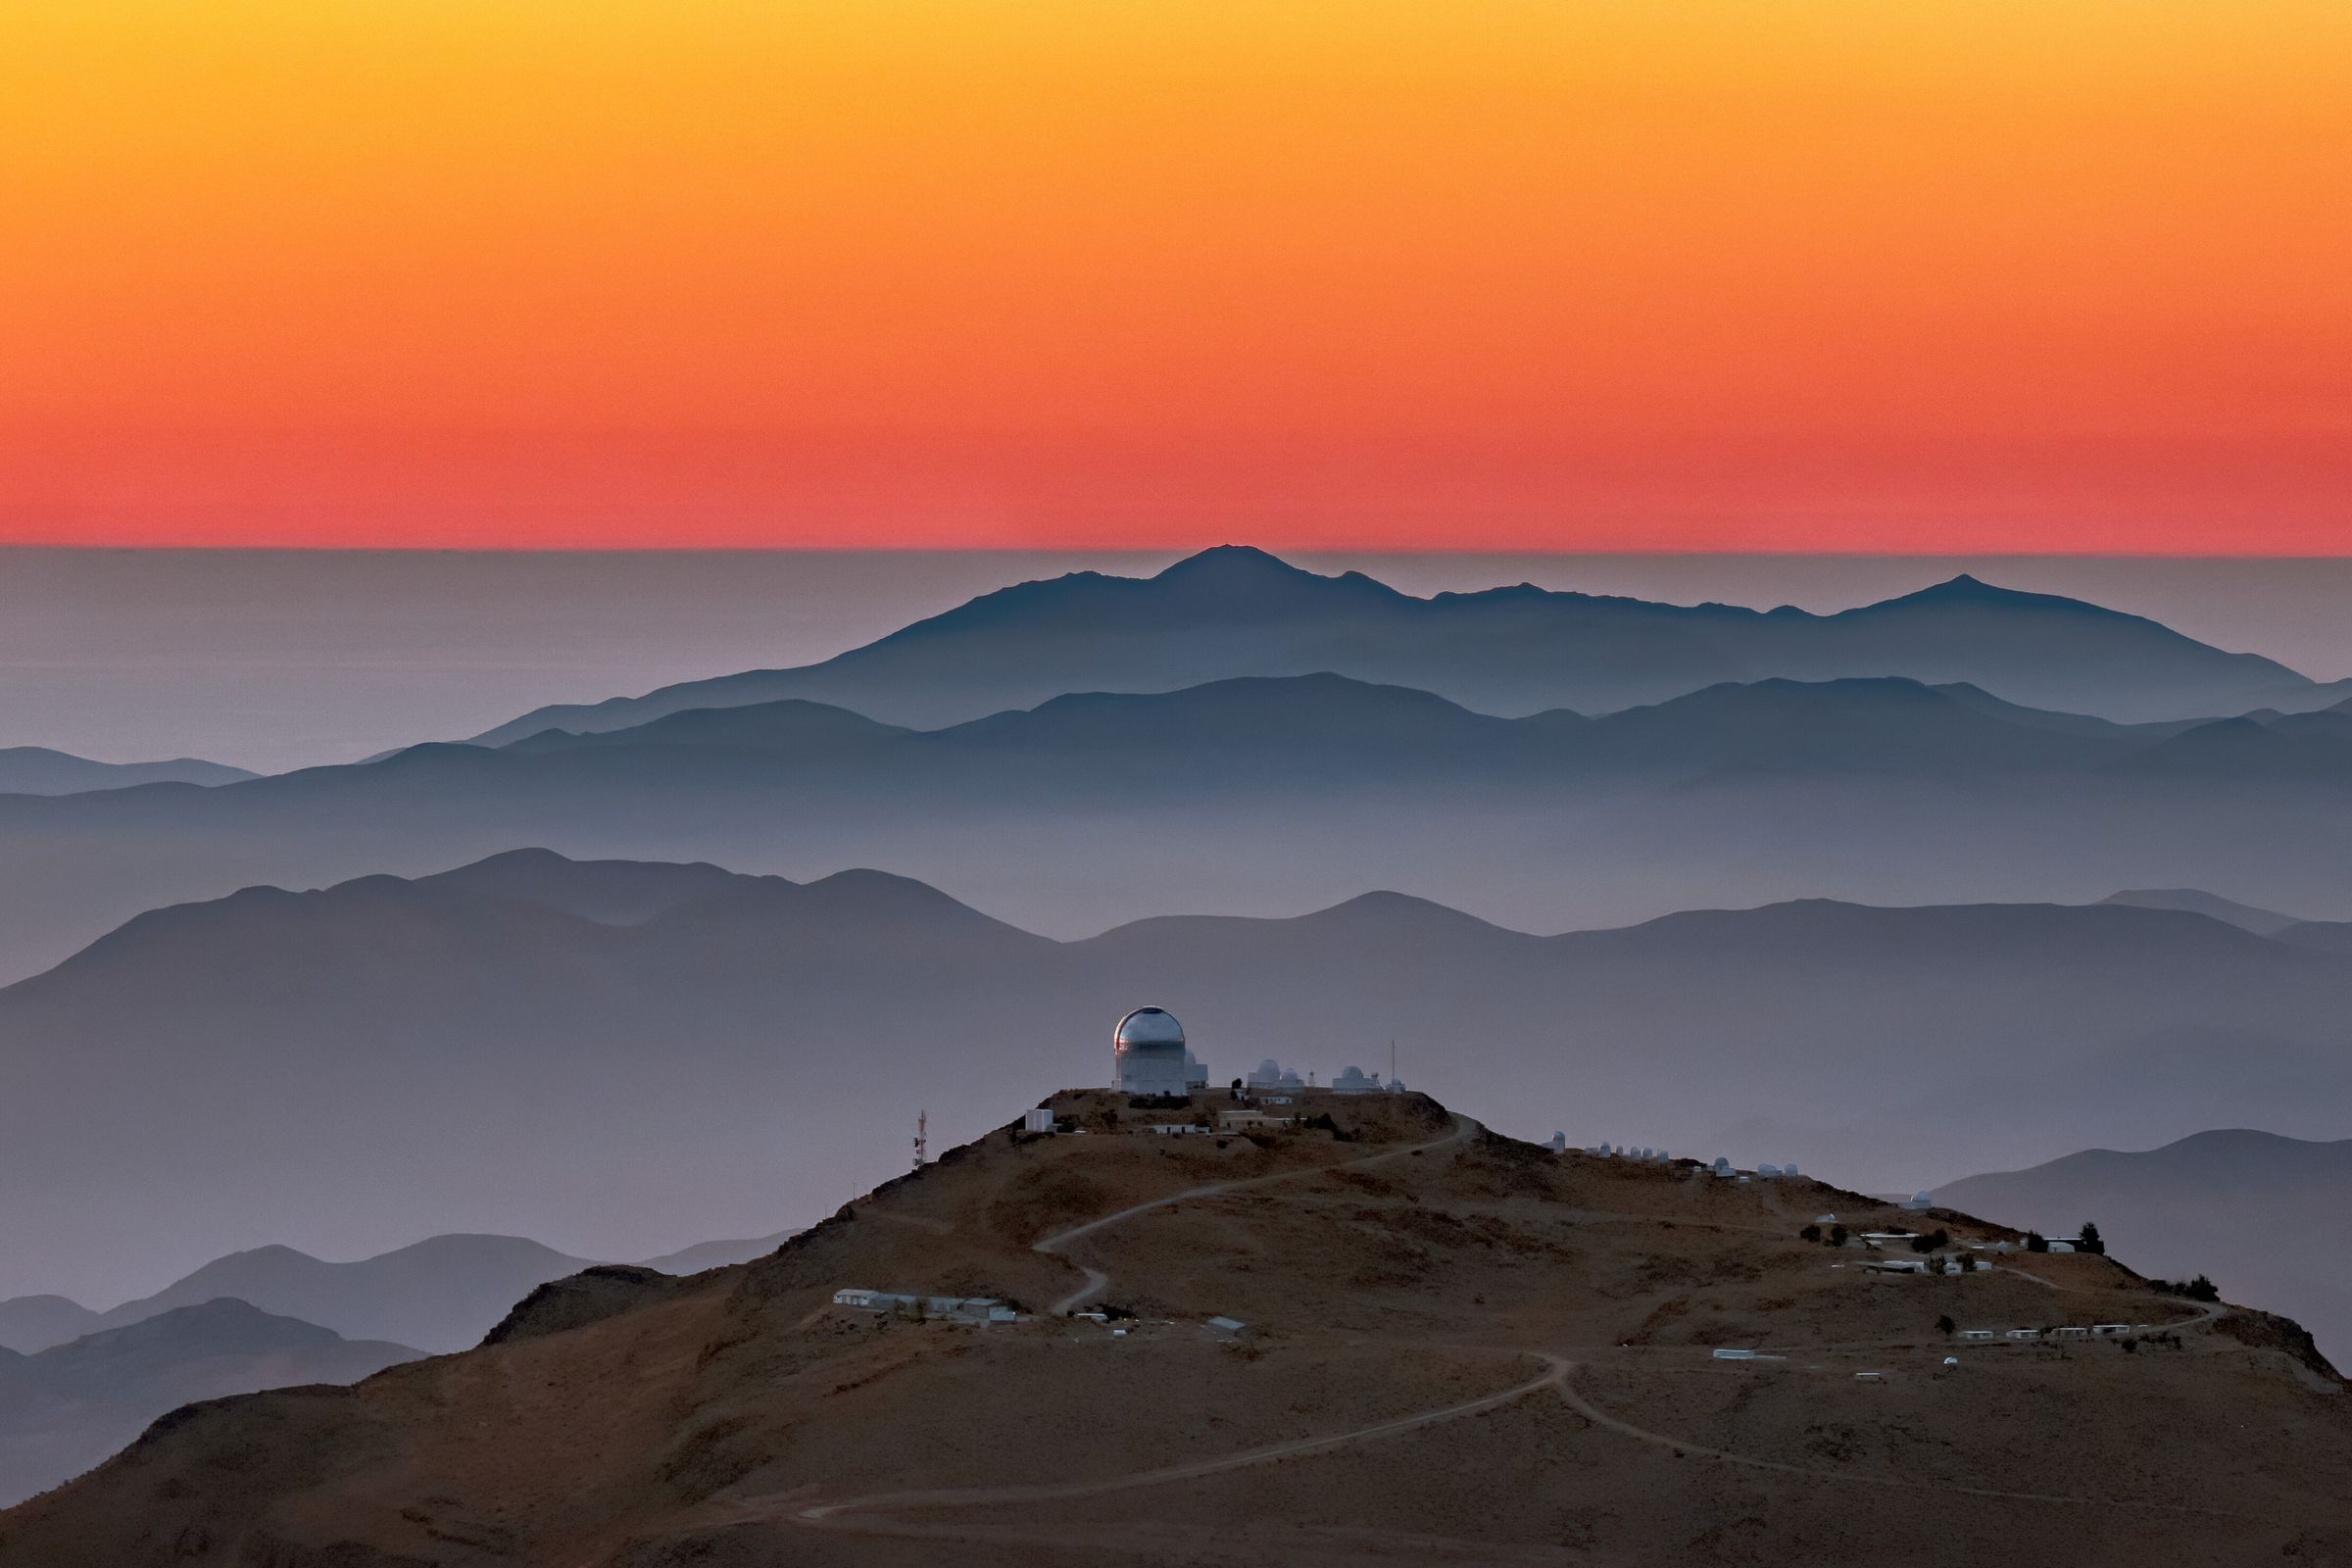 Die Kuppeln eines Satellitenclusters sitzen auf einem Bergrücken im Vordergrund.  Bergrücken erheben sich im Hintergrund und gehen in einen orangefarbenen Sonnenuntergangshimmel über.